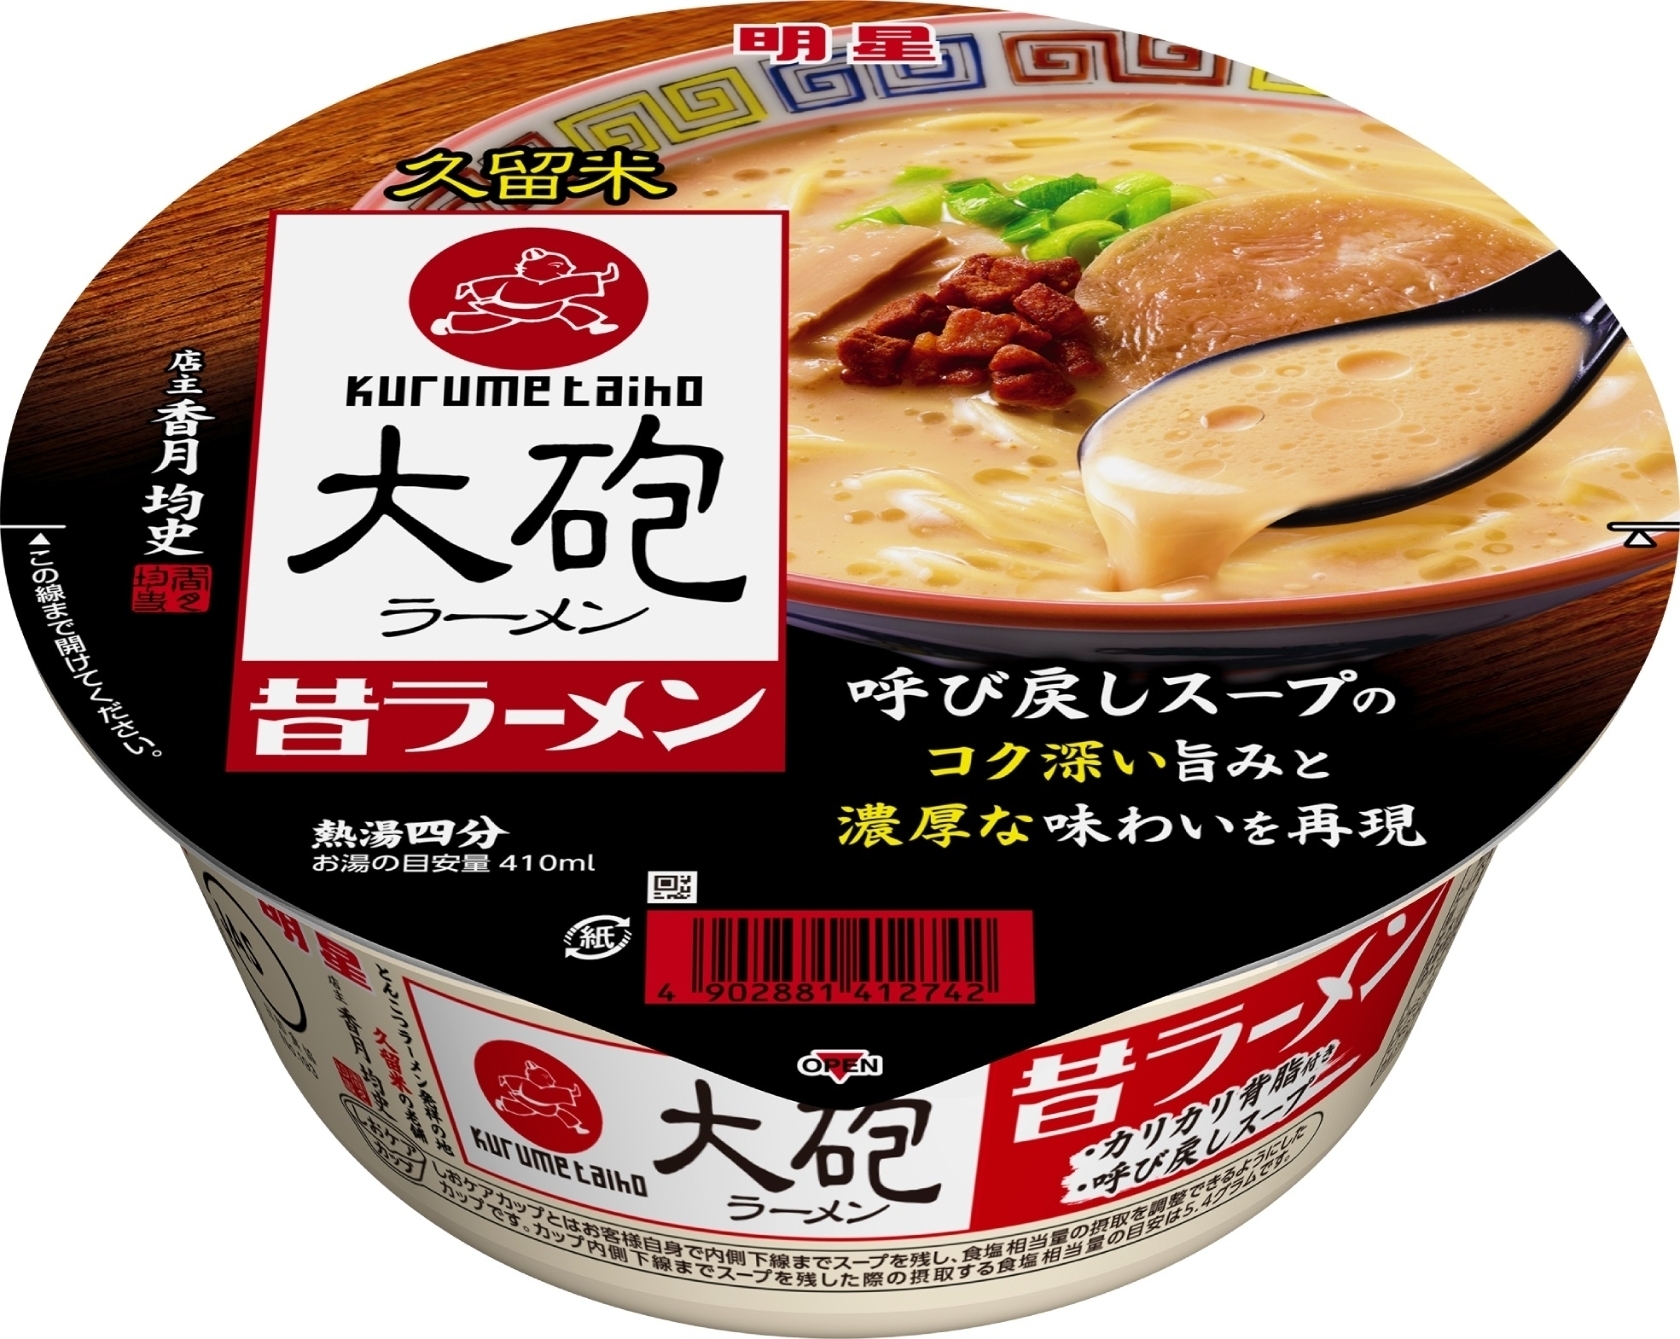 メーカー公式ショップ 人気 久留米 豚骨ラーメン 白濁濃厚 豚骨スープ 九州 博多 ラーメン うまかよ 食品